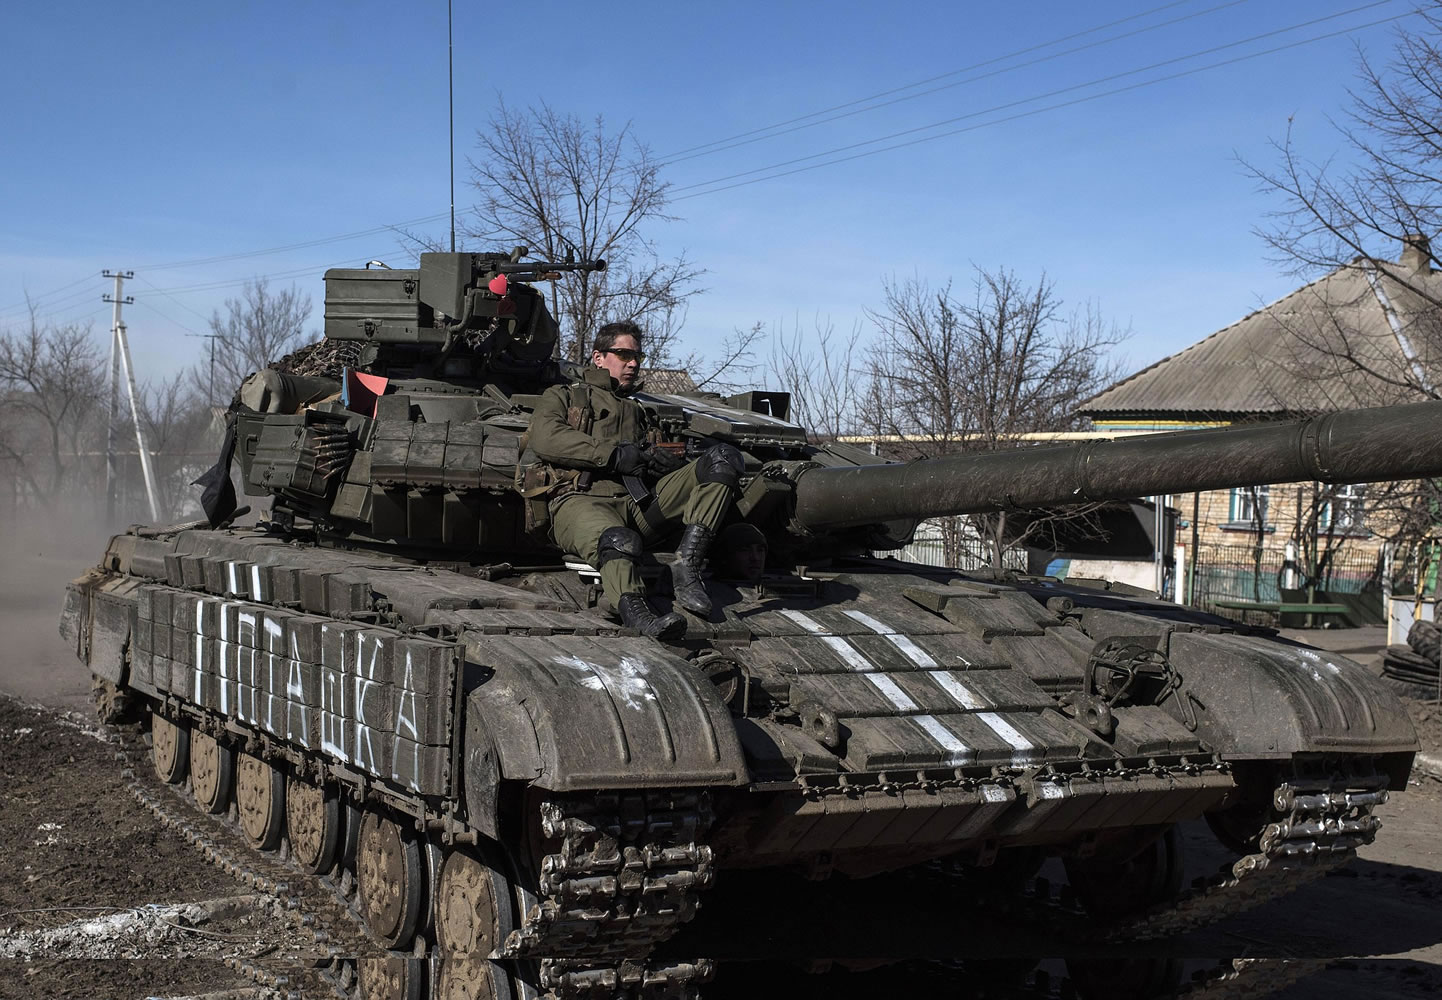 Ukrainian troops ride on a tank Tuesday near the village of Luhanske, eastern Ukraine.